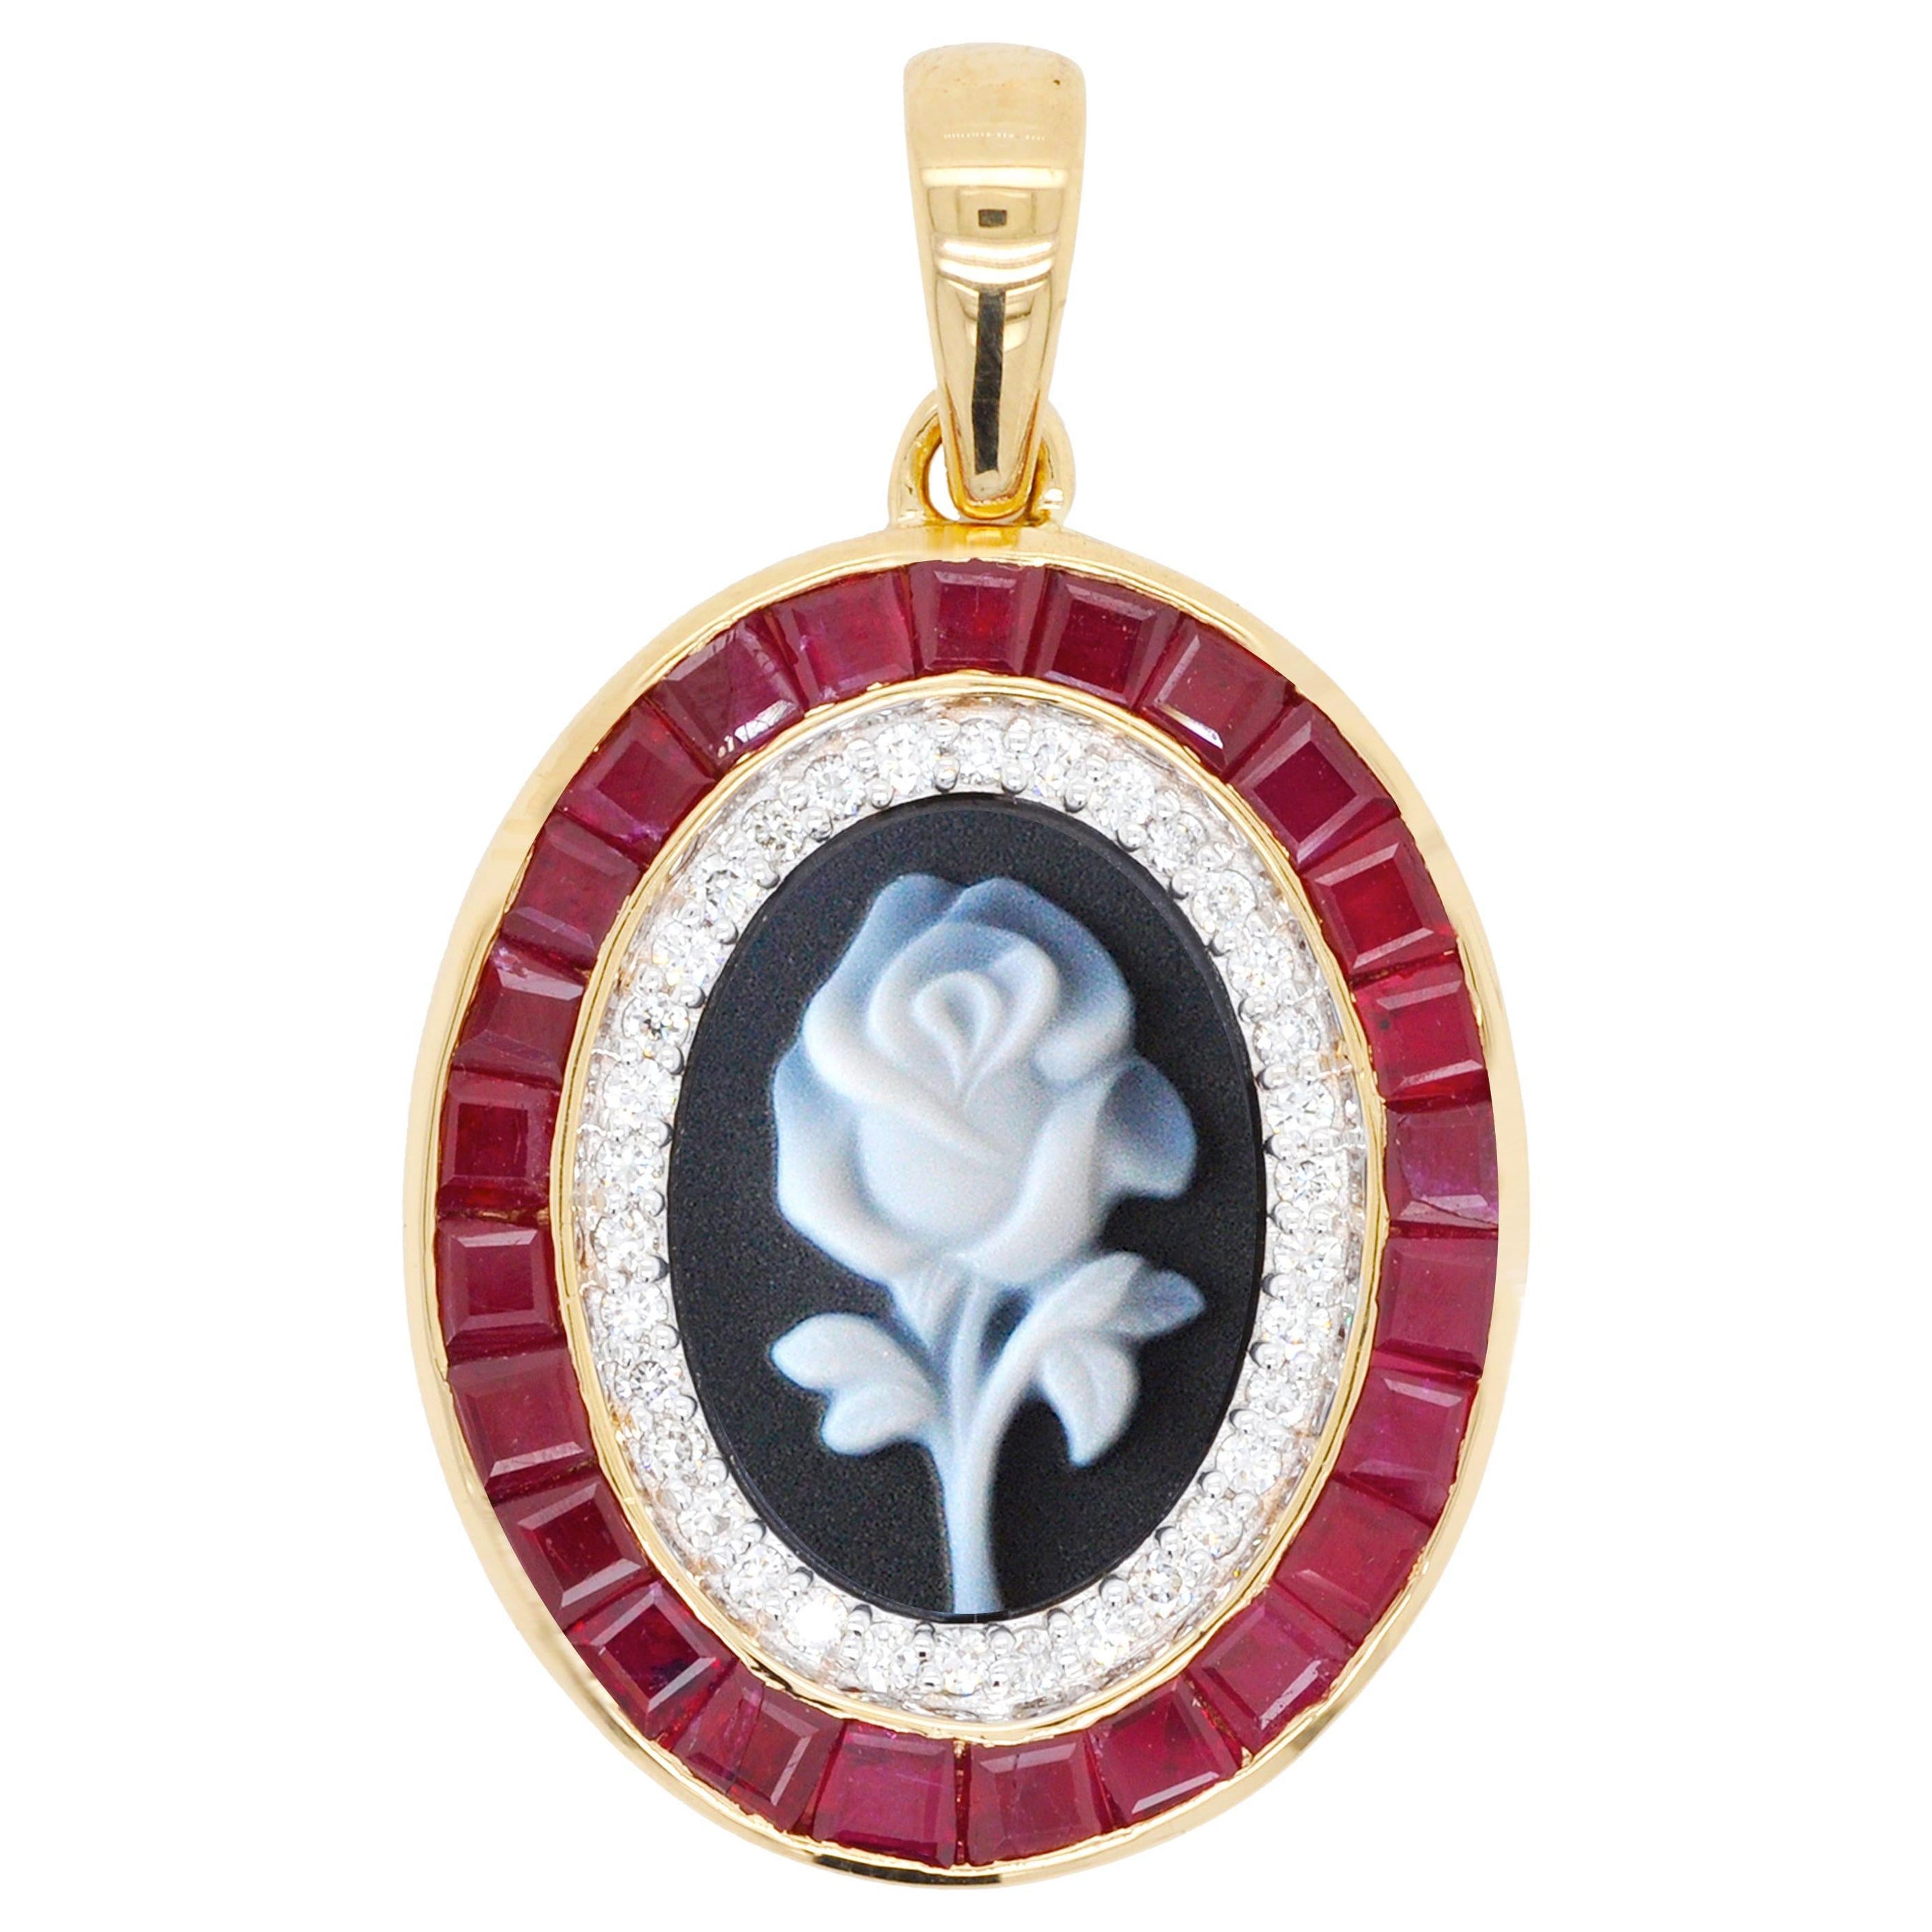 Collier pendentif camée en or 18 carats avec diamants et agate rose en rubis de Birmanie, taille calibre